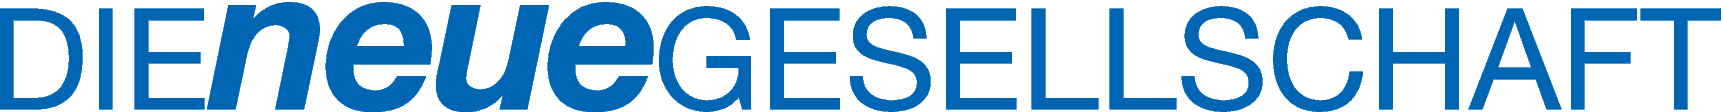 Die Neue Gesellschaft logo